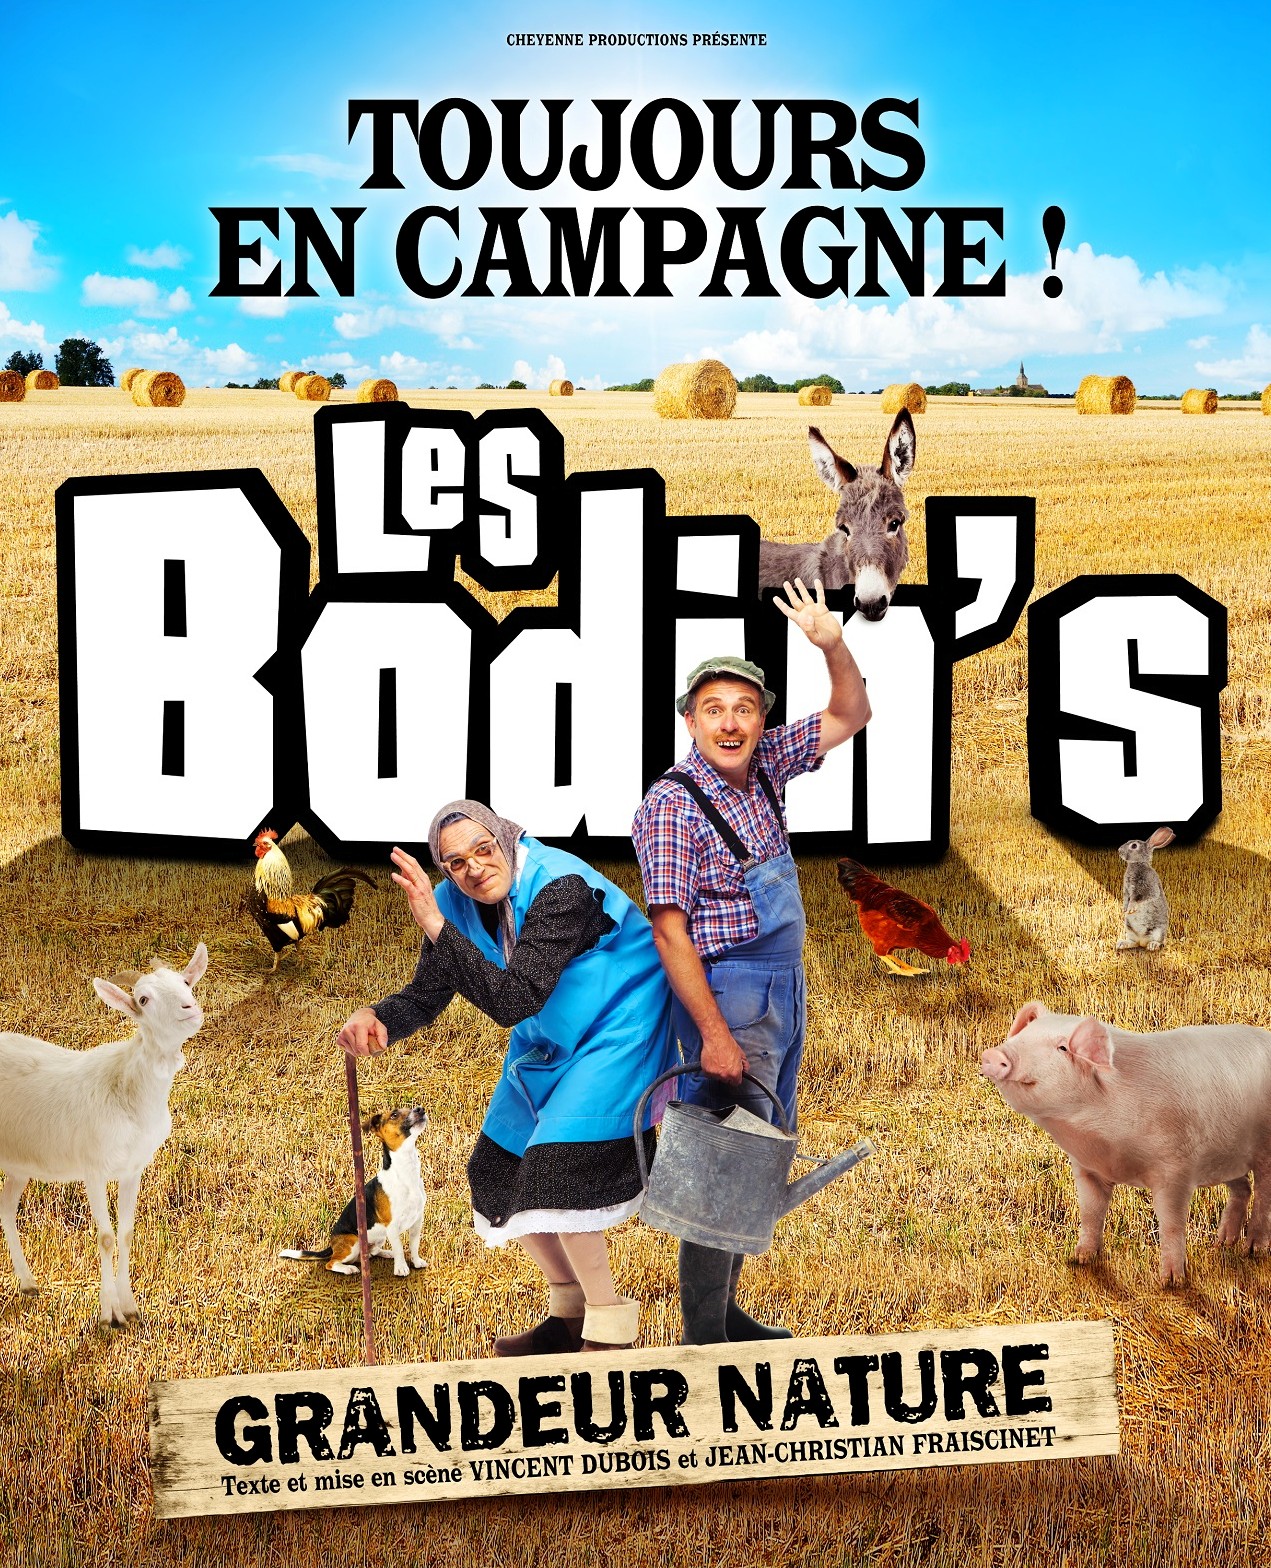 Les Bodin's: Grandeur nature